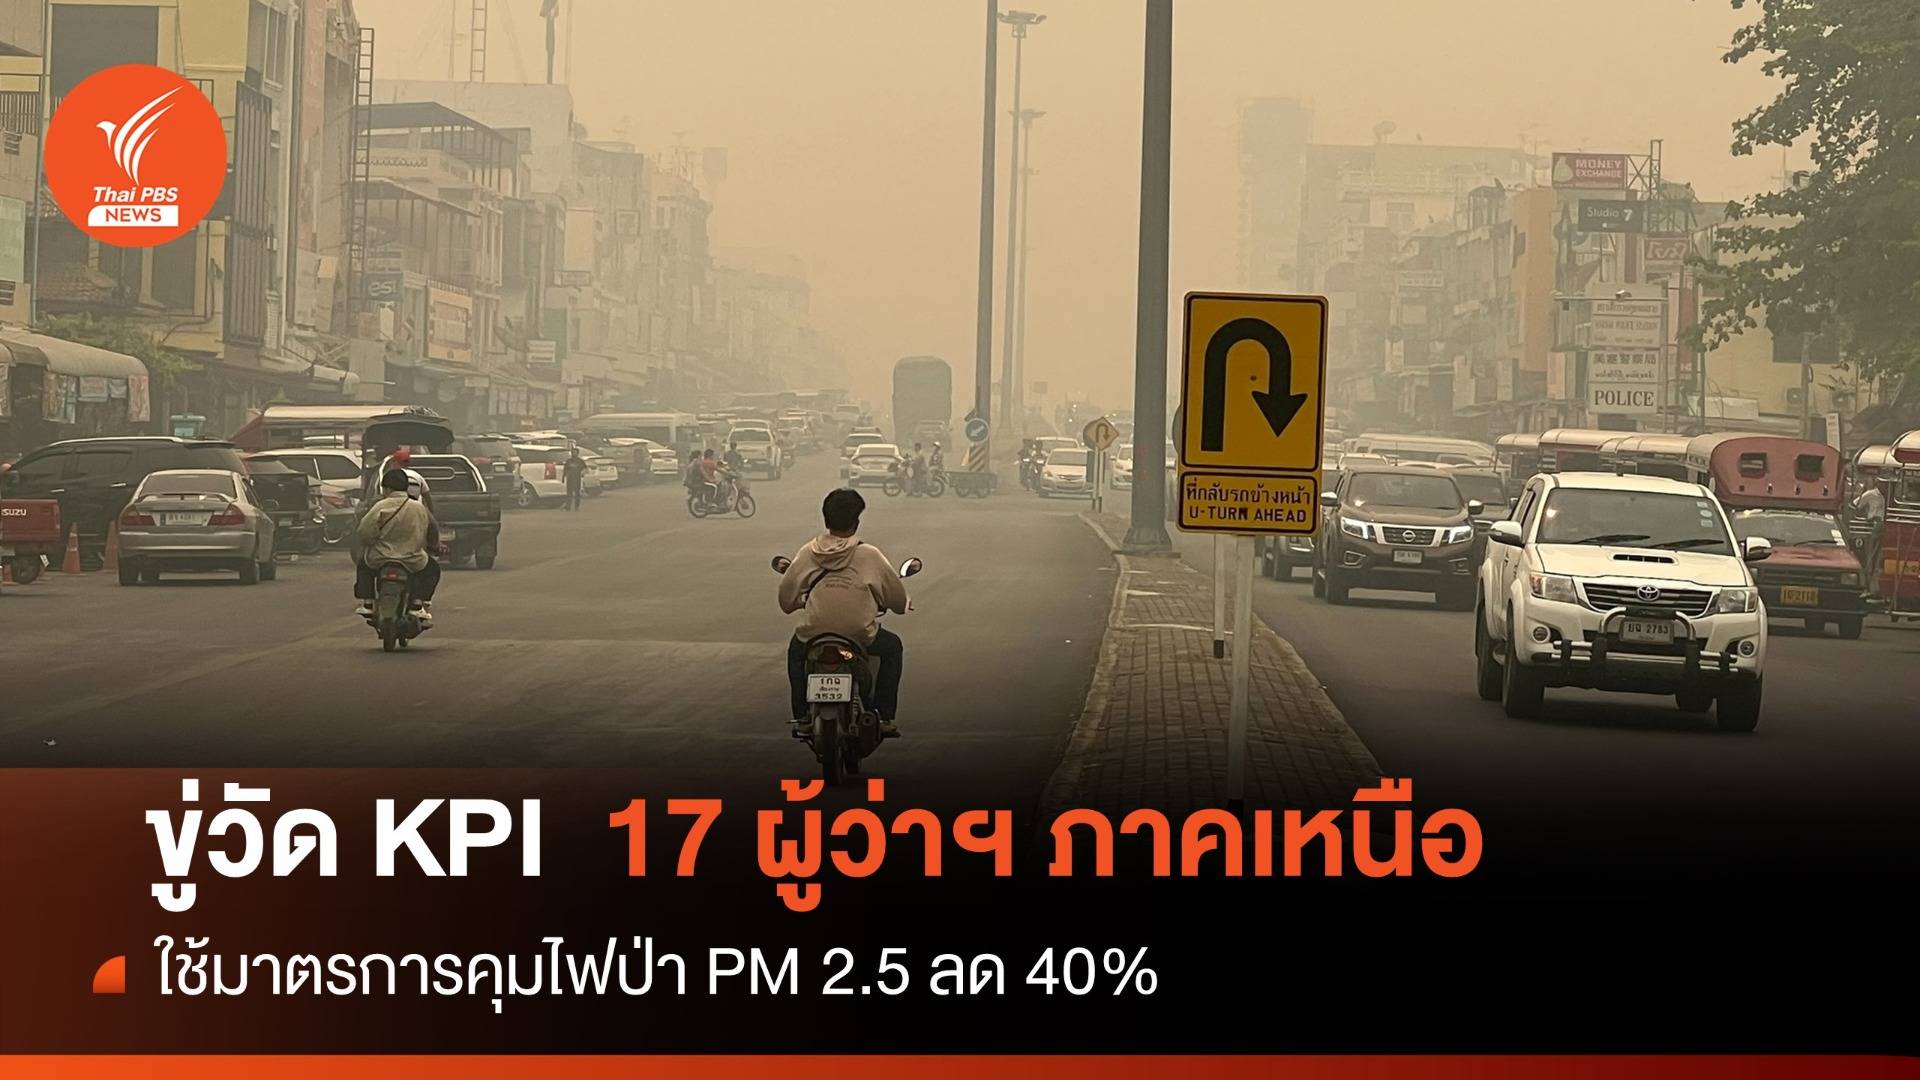 ขู่วัด KPI ผู้ว่าฯภาคเหนือต้องคุมไฟป่า-PM 2.5 ลด 40% 